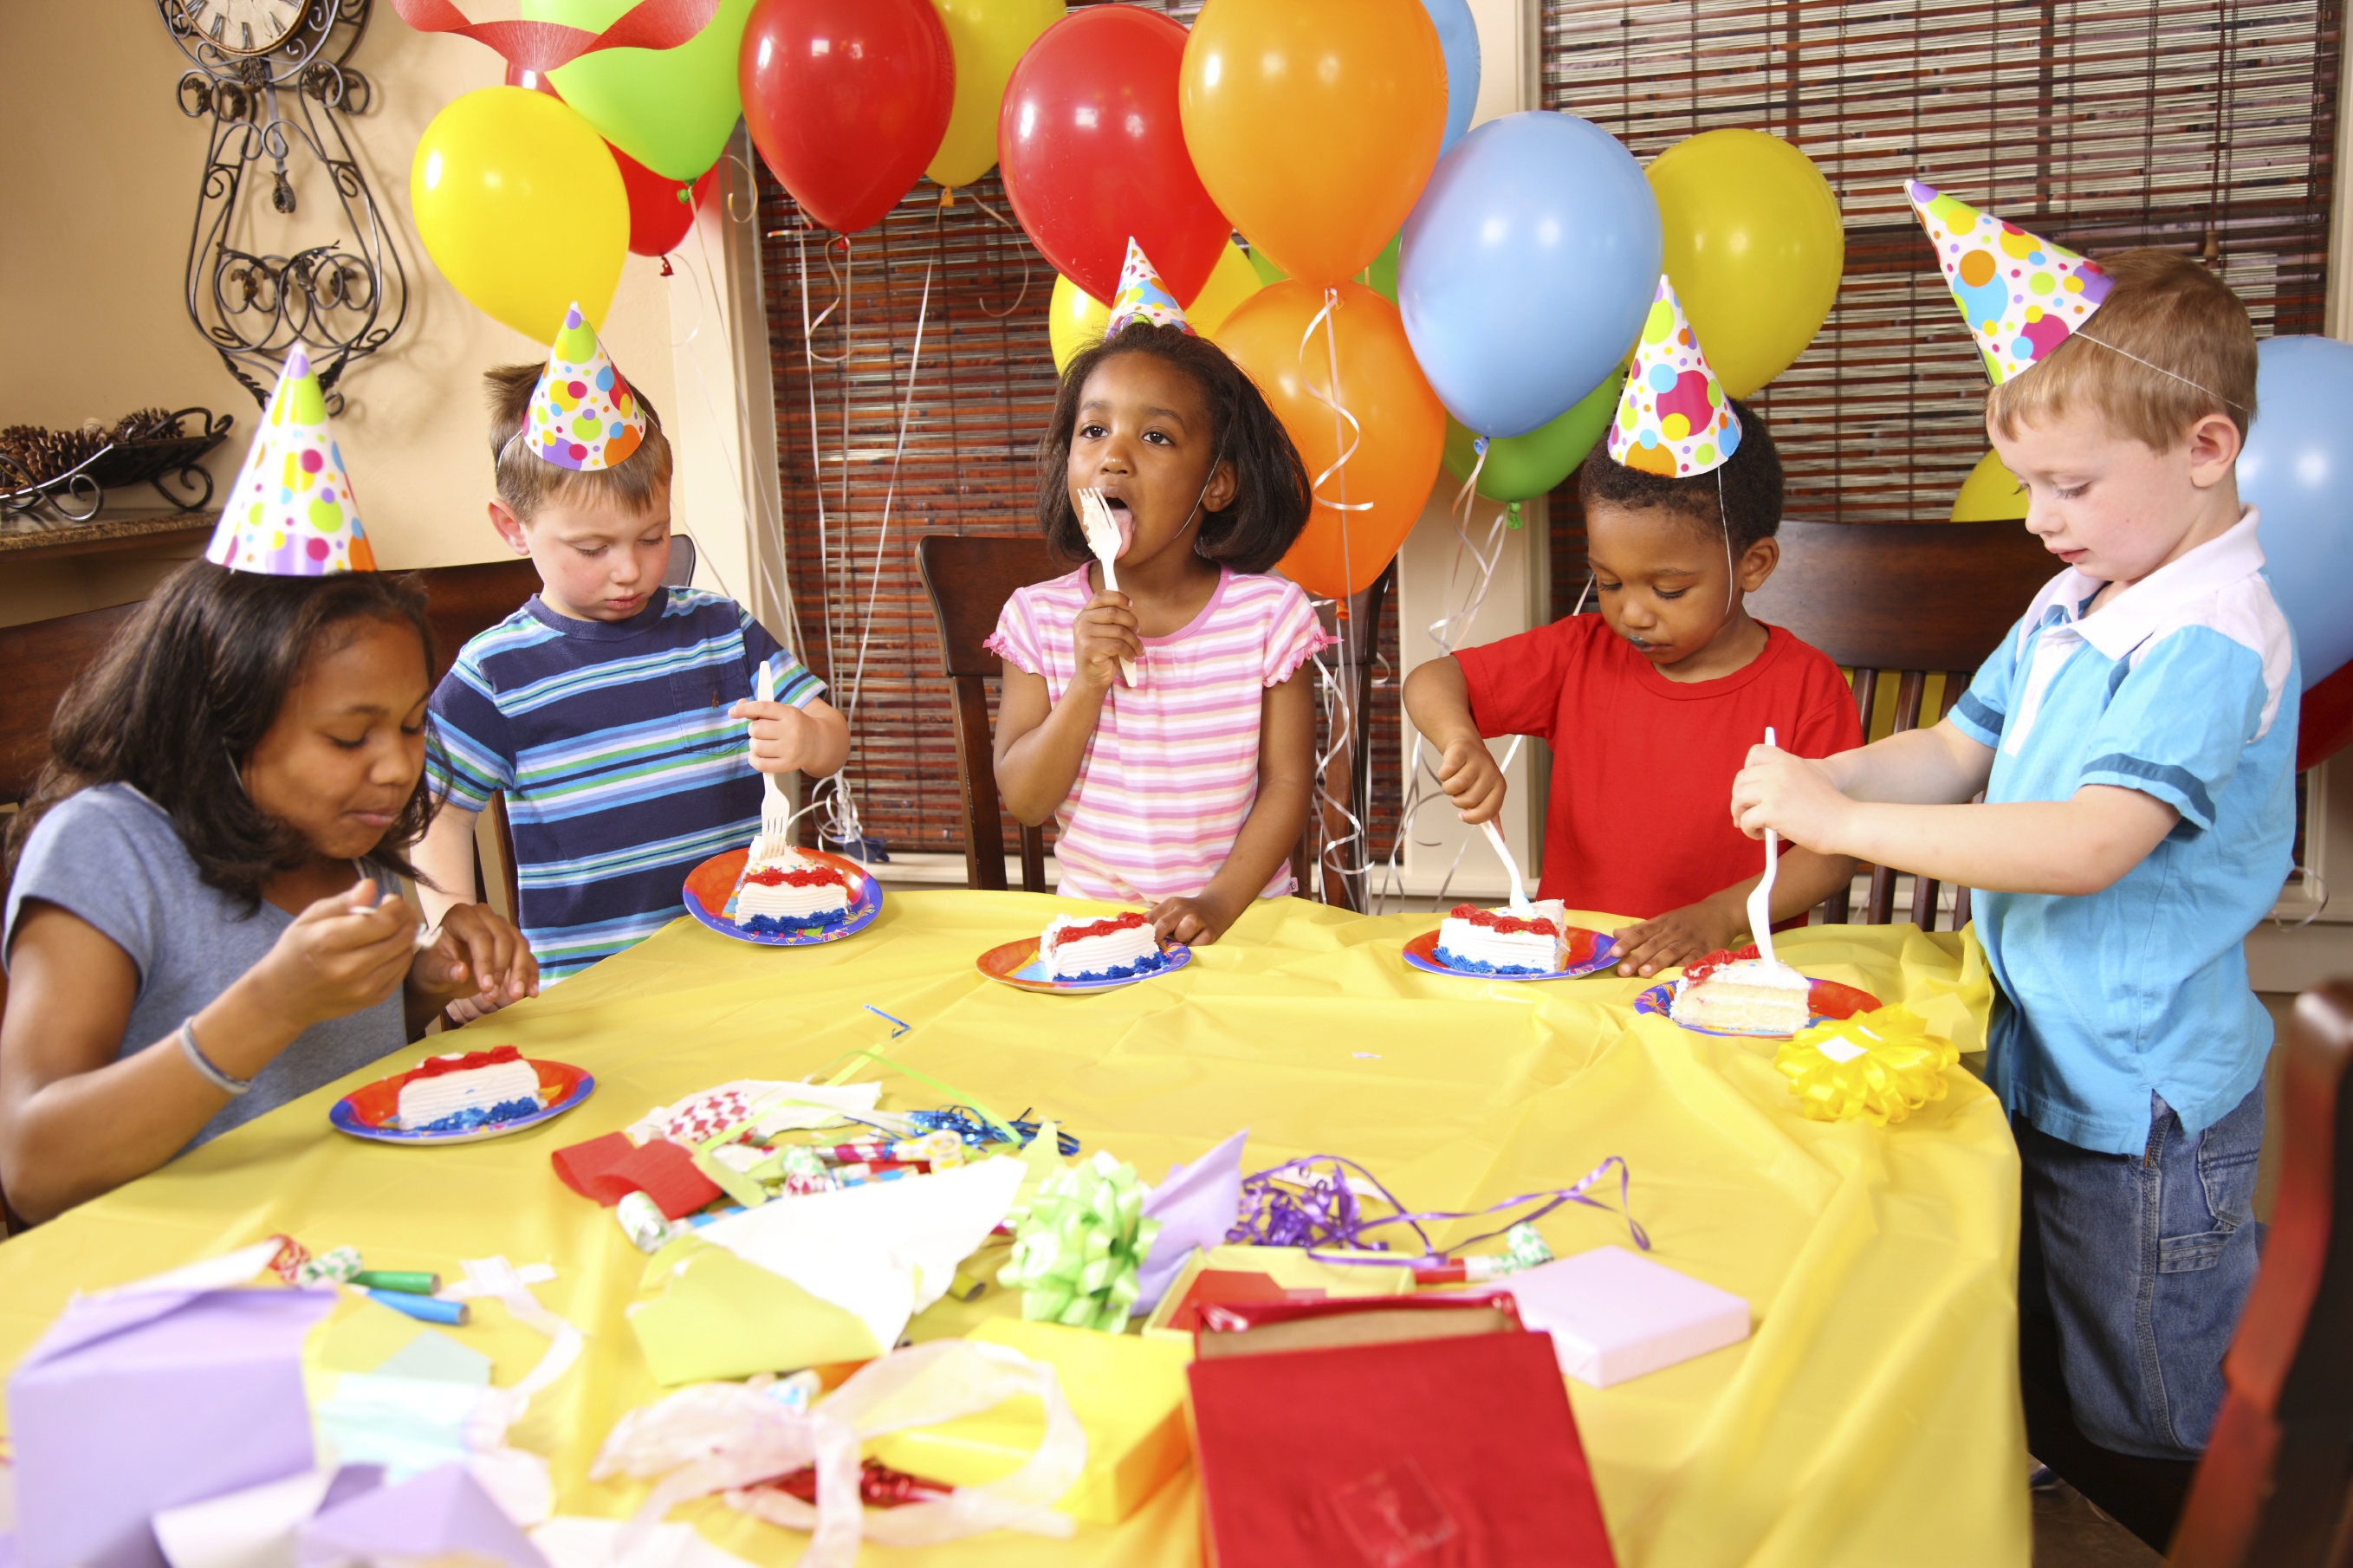 15 вариантов: где отметить день рождения ребенка | снова праздник! | коллекция праздничных идей